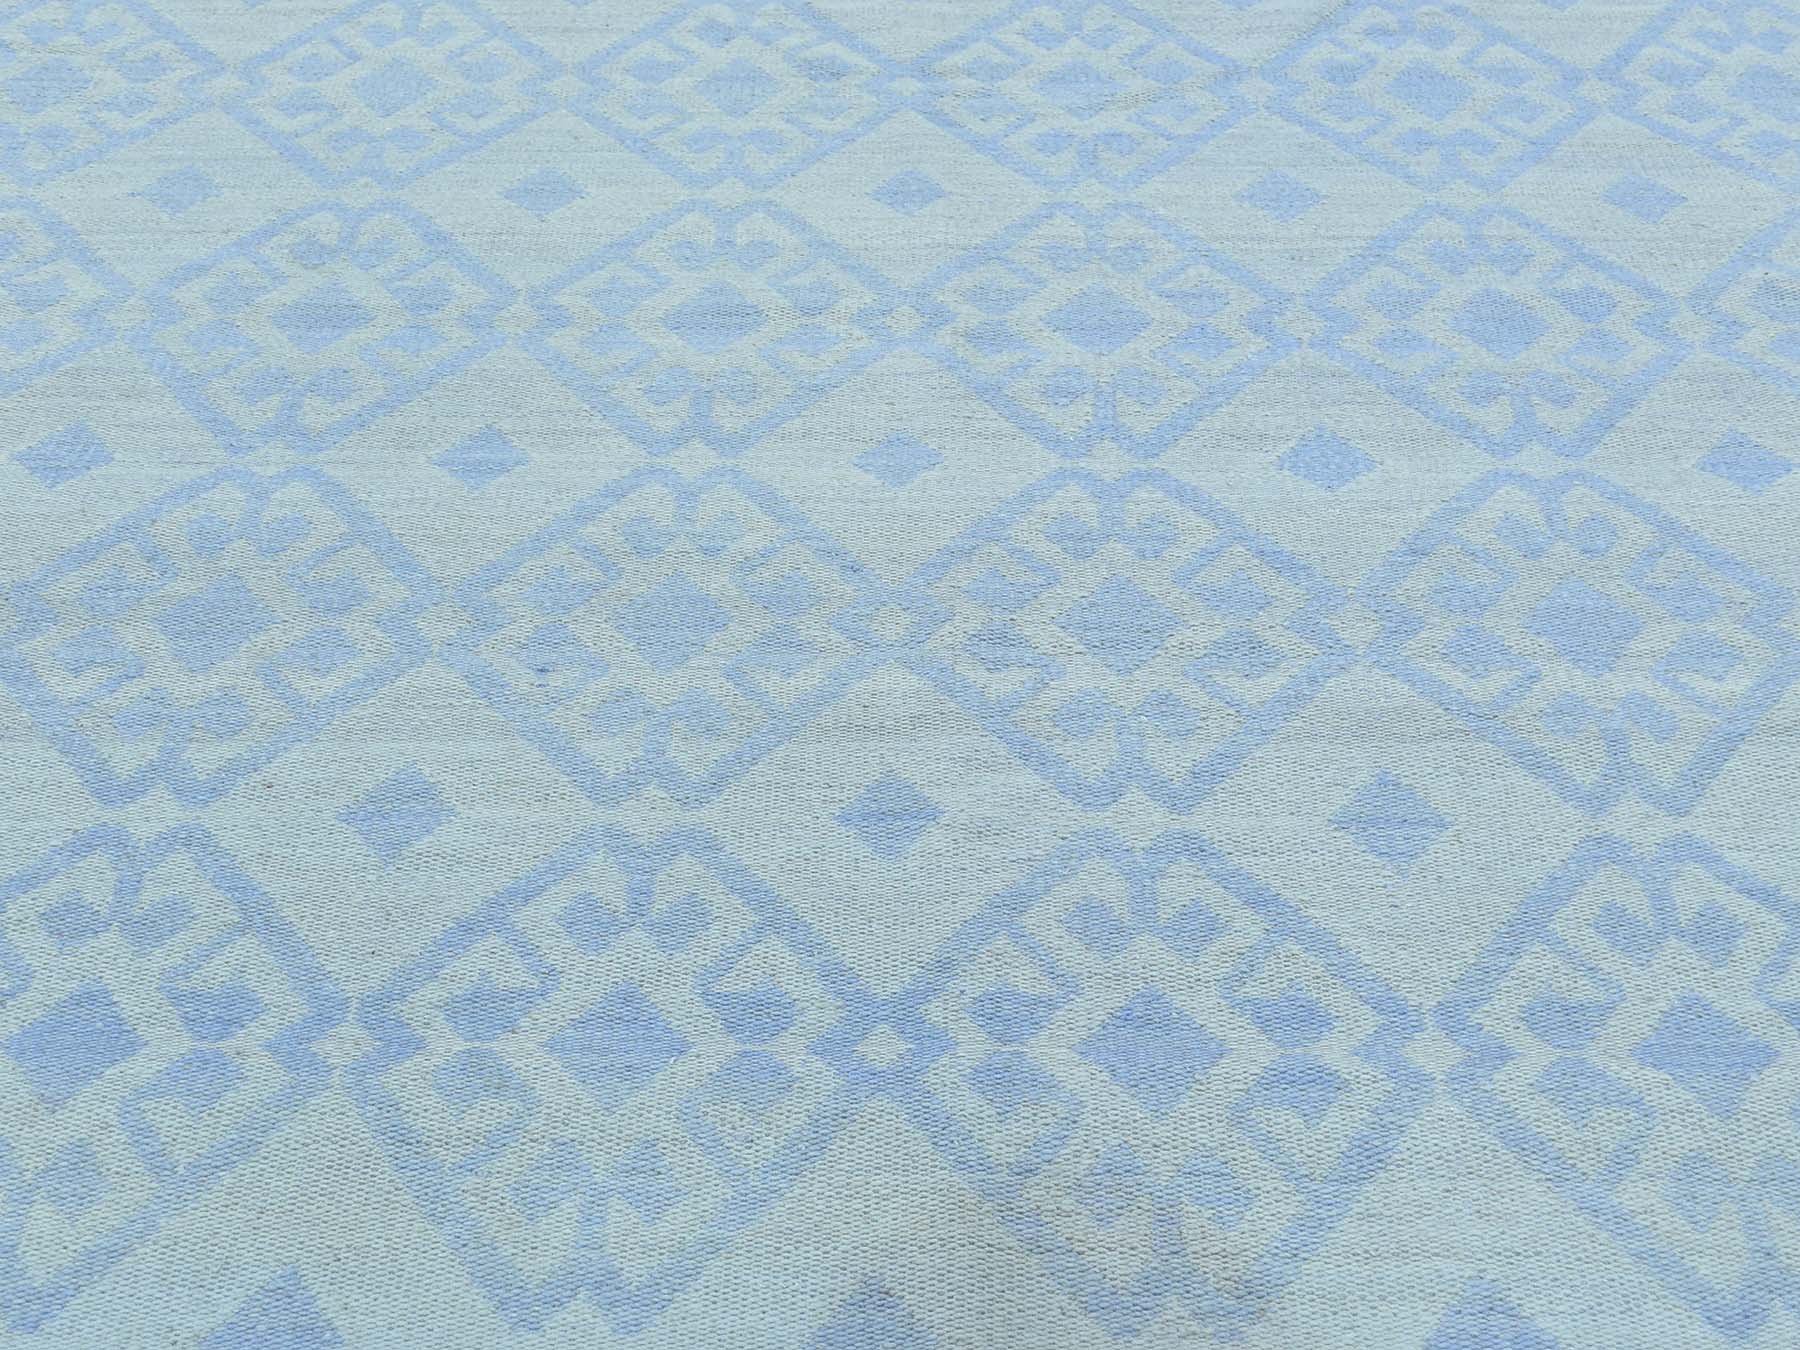 flat weave rugs LUV326565